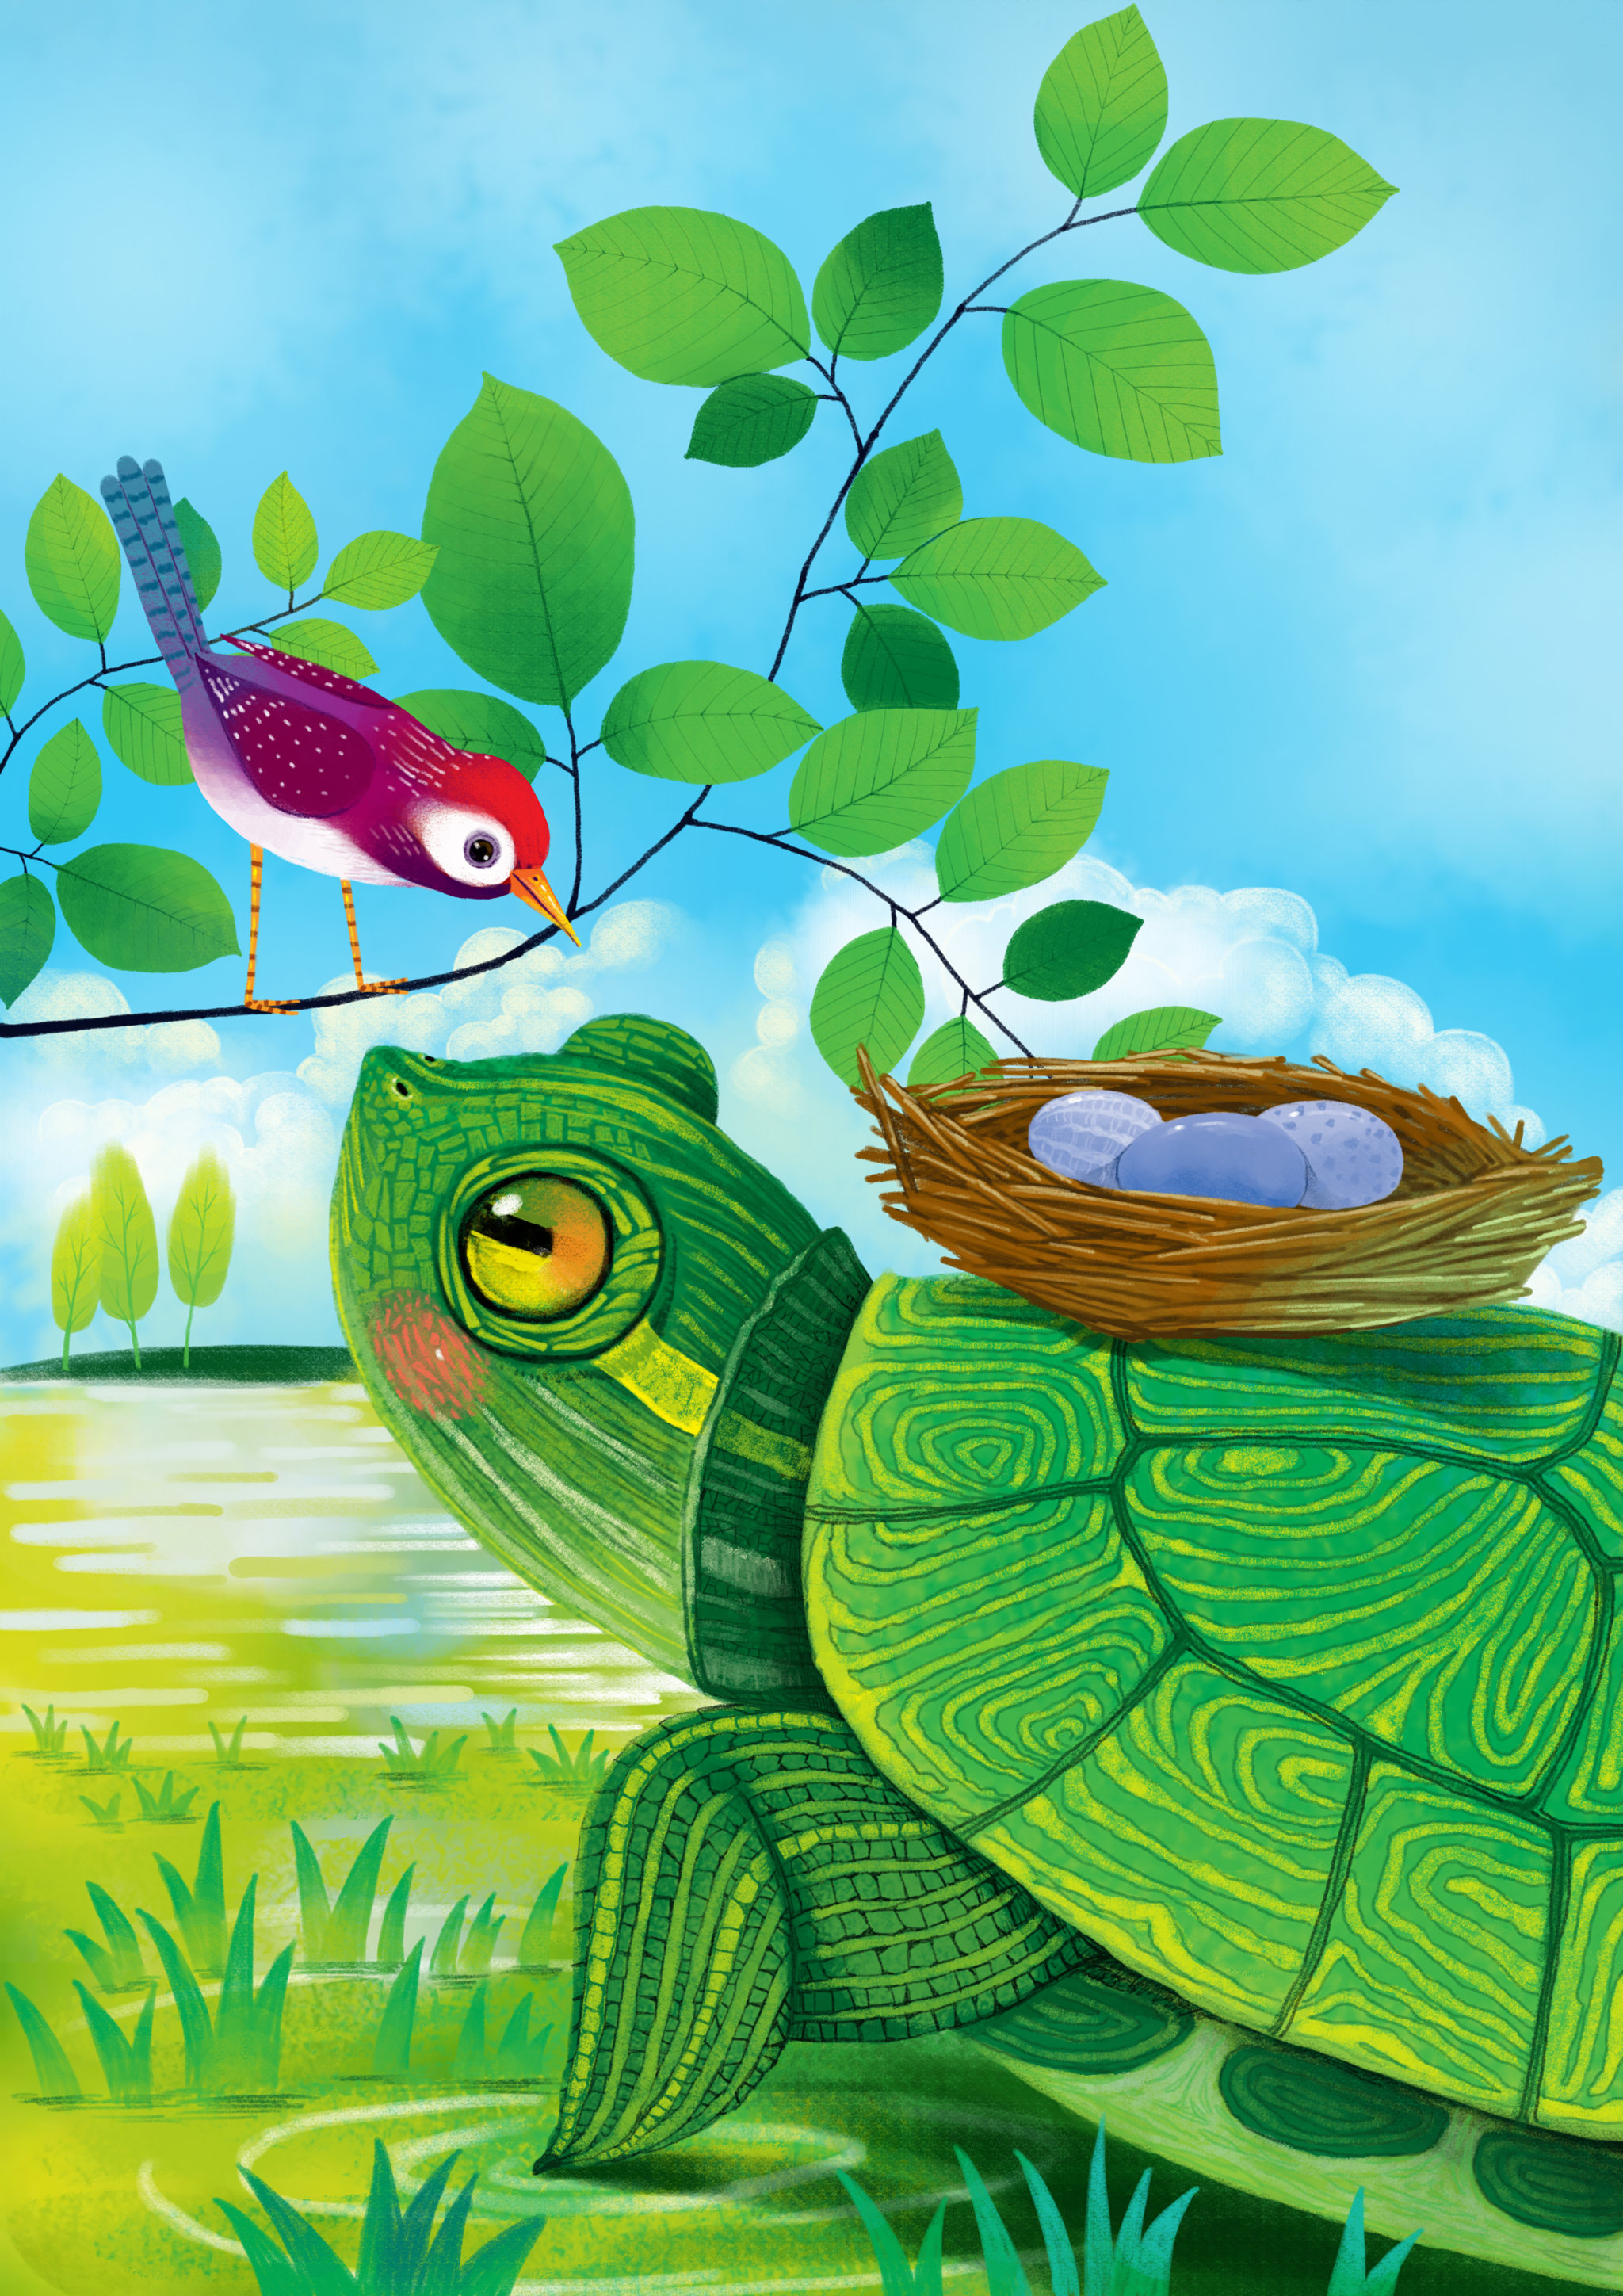 天地童趣动物插画系列乌龟驮着蛋